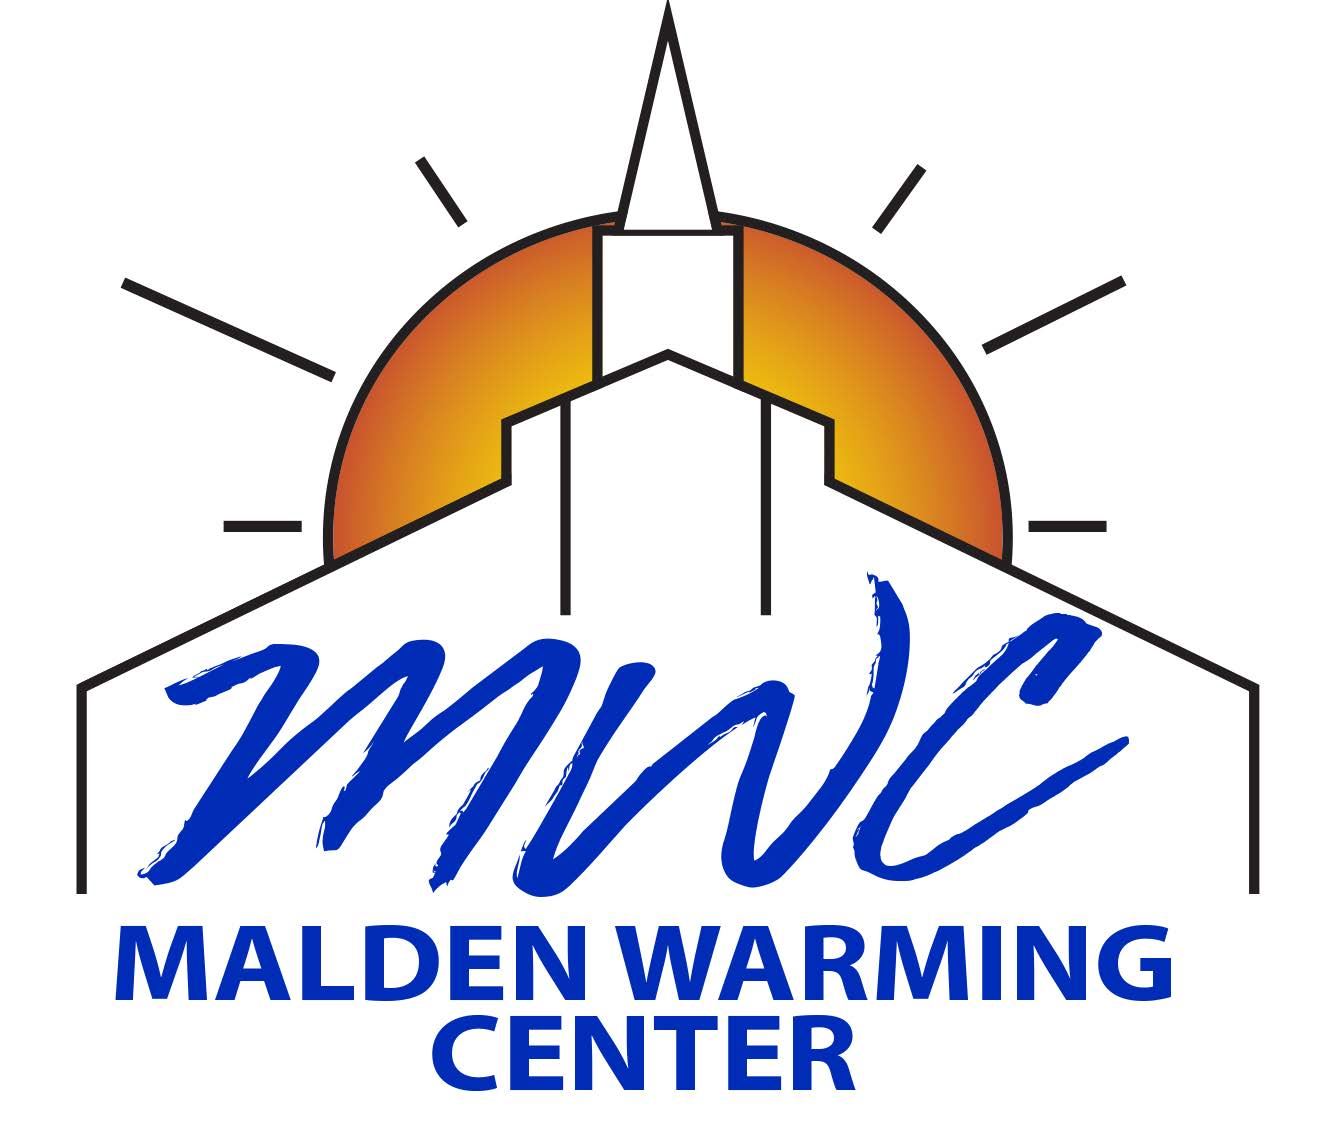 Malden Warming Center logo